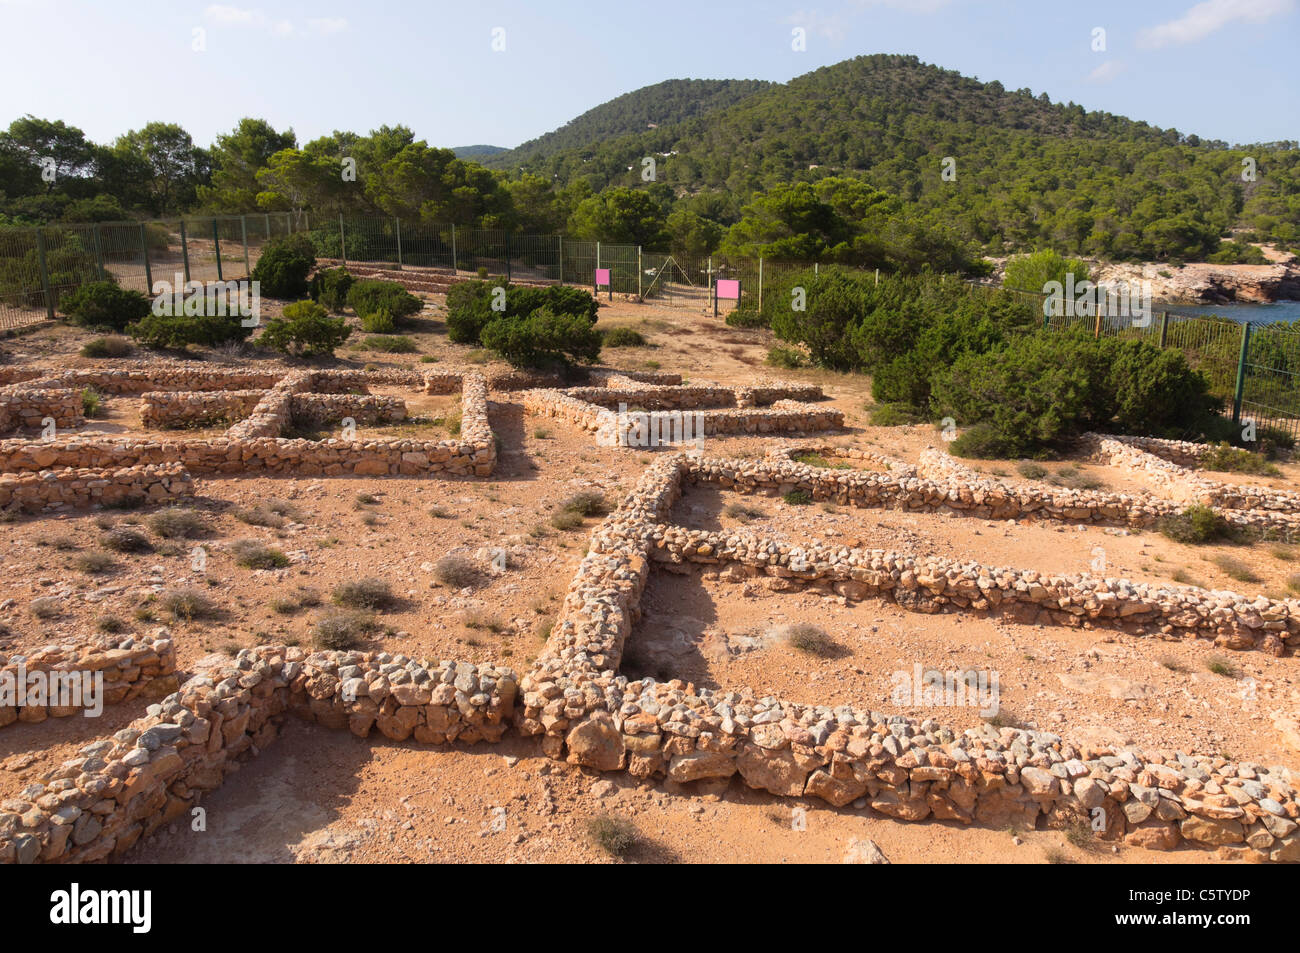 Ibiza, Balearen, Spanien - Sa Caleta, punischen Siedlung archäologische Stätte. Poblat Fenici, phönizische Pueblo Dorf an der Küste. Stockfoto